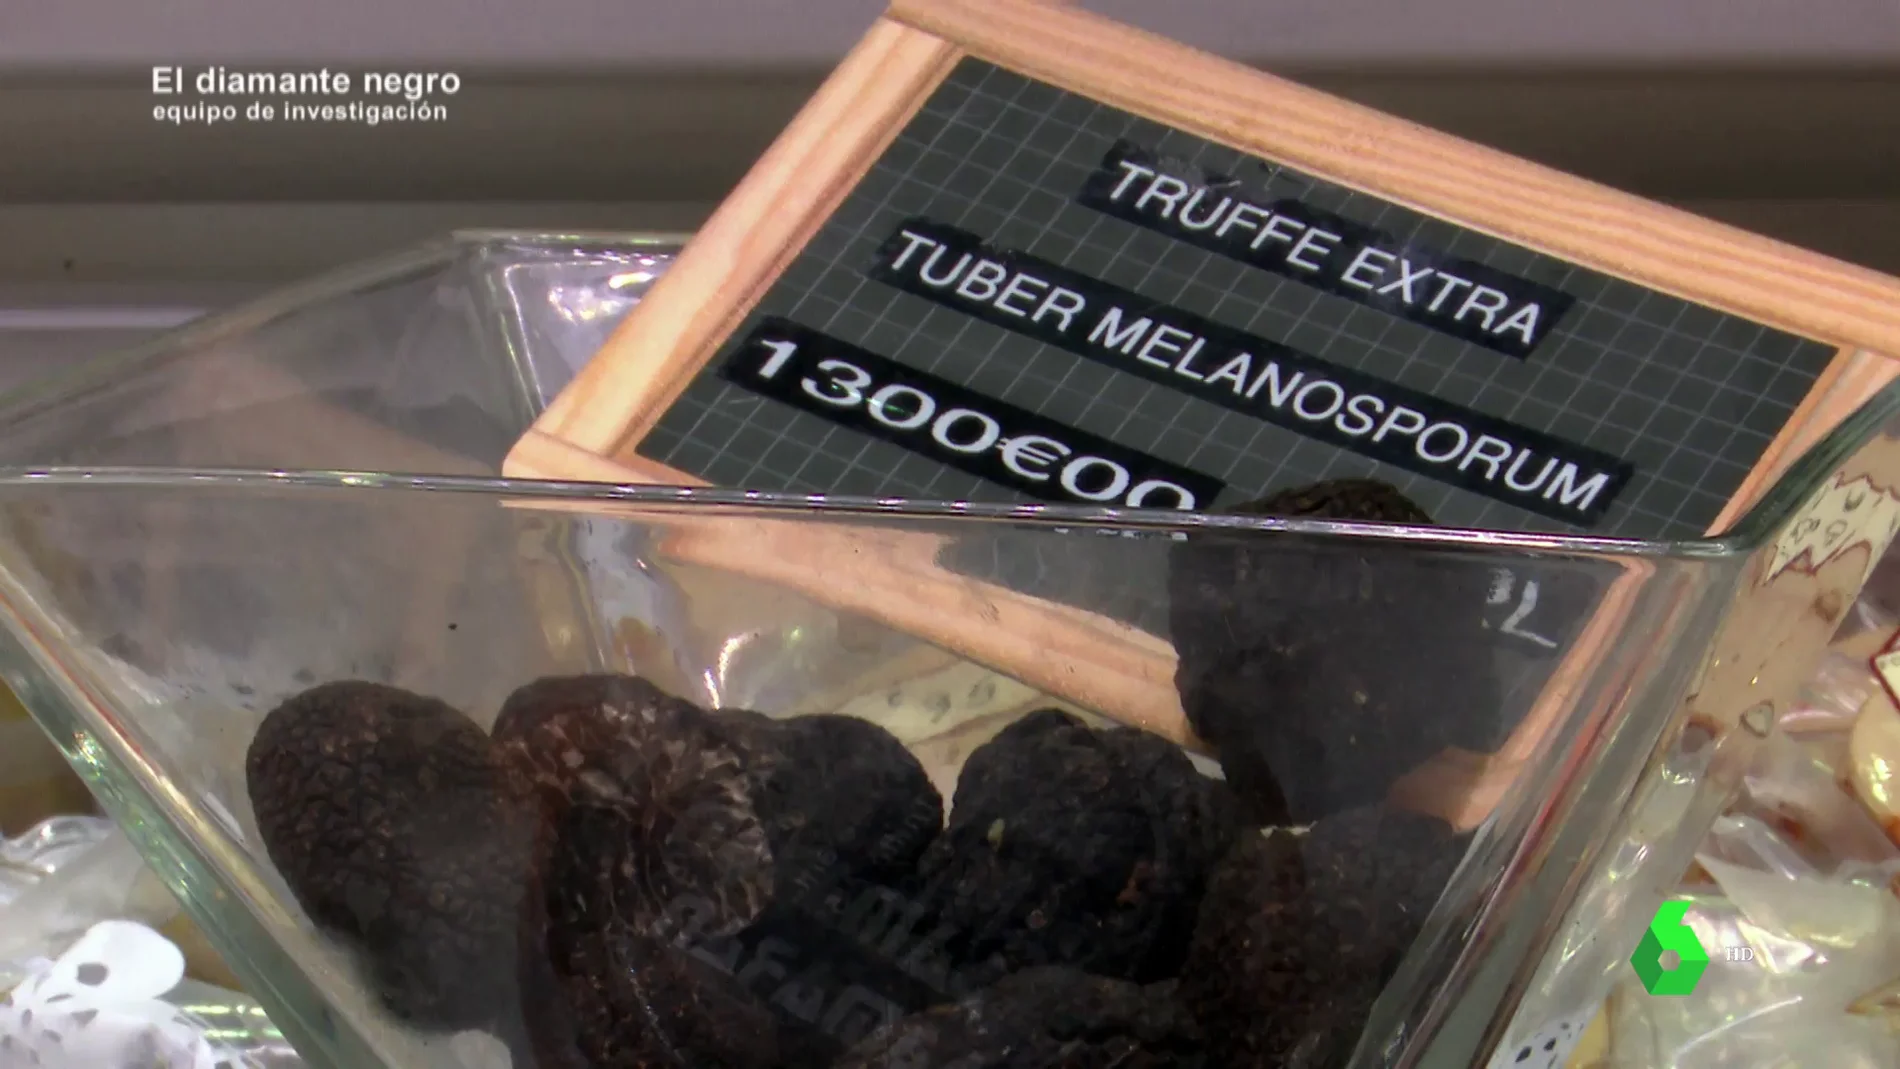 Kilo de trufas negras a 1.300 euros